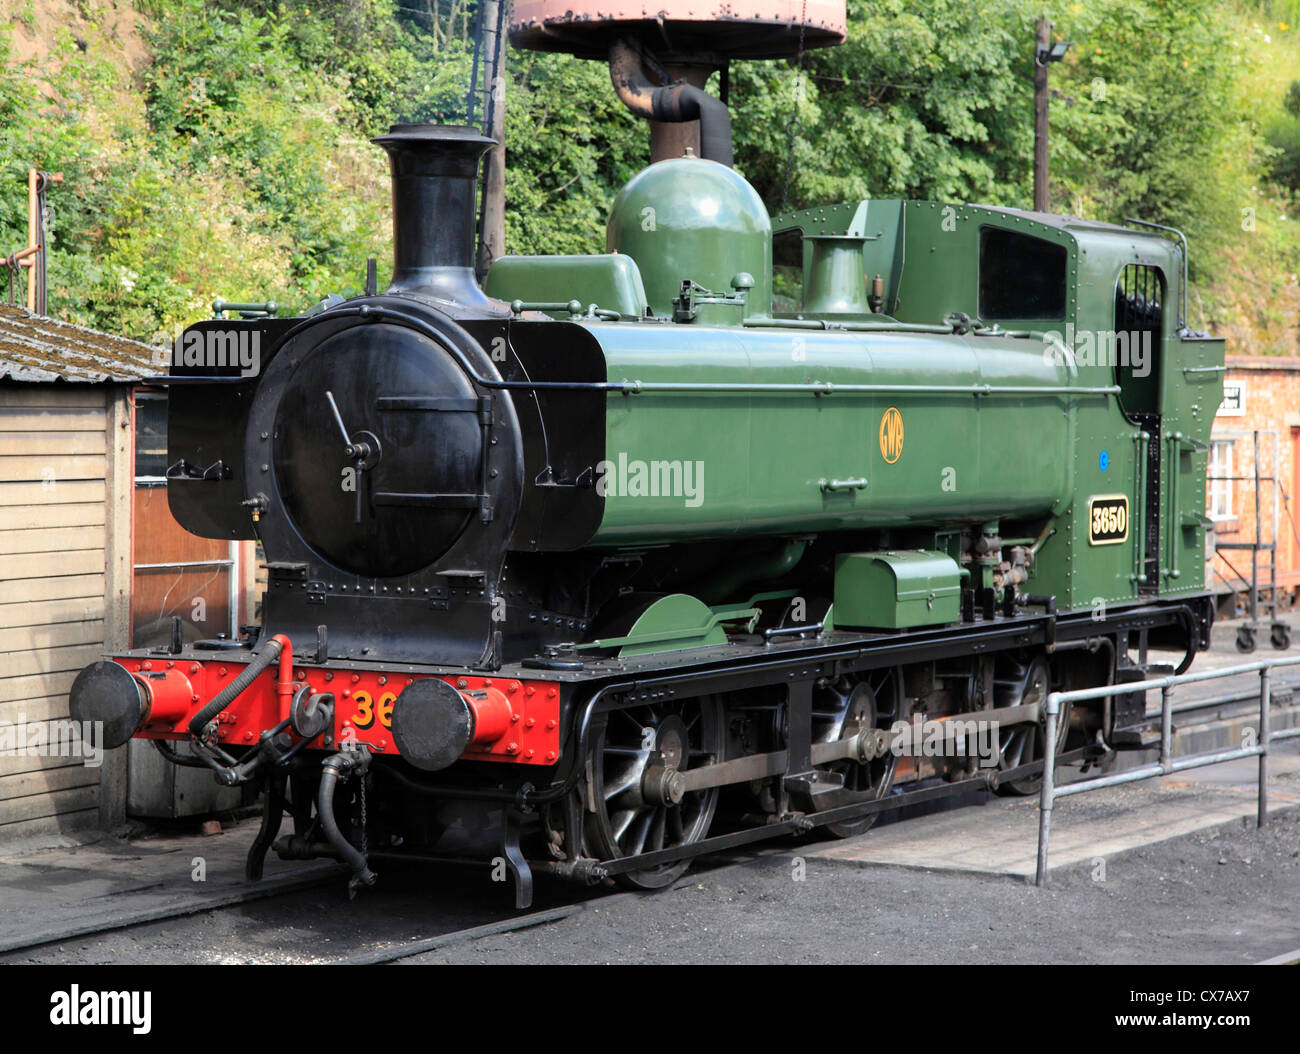 Réservoir de pannier n°3650 0-6-0 locomotive à vapeur de la vallée de la Severn Blakebrook Gare, Worcestershire, Angleterre. Banque D'Images